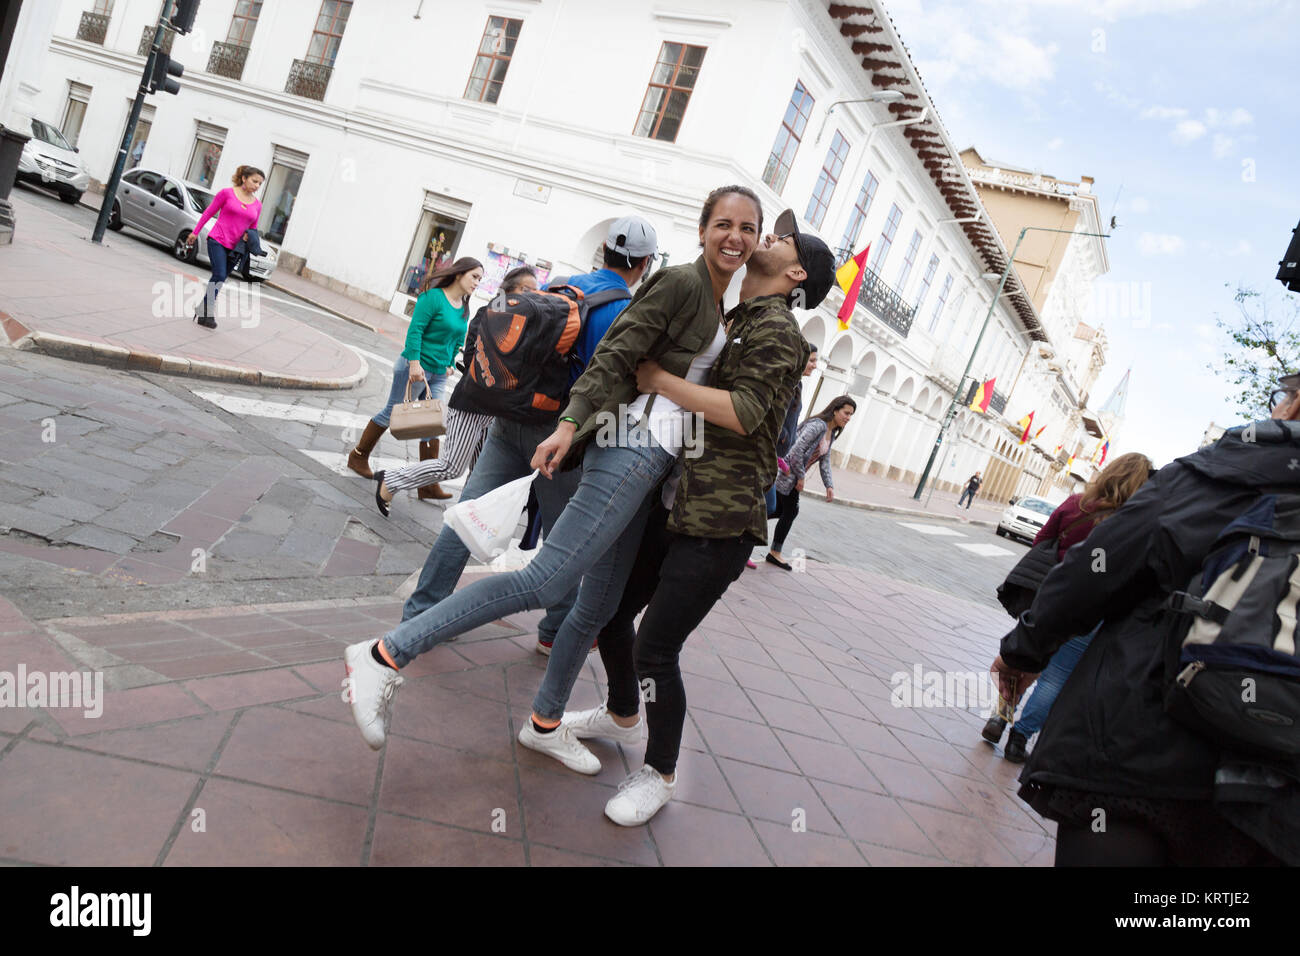 La photographie de rue Equateur Amérique du Sud - un heureux couple hugging in la rue, Cuenca, Équateur Amérique Latine Banque D'Images